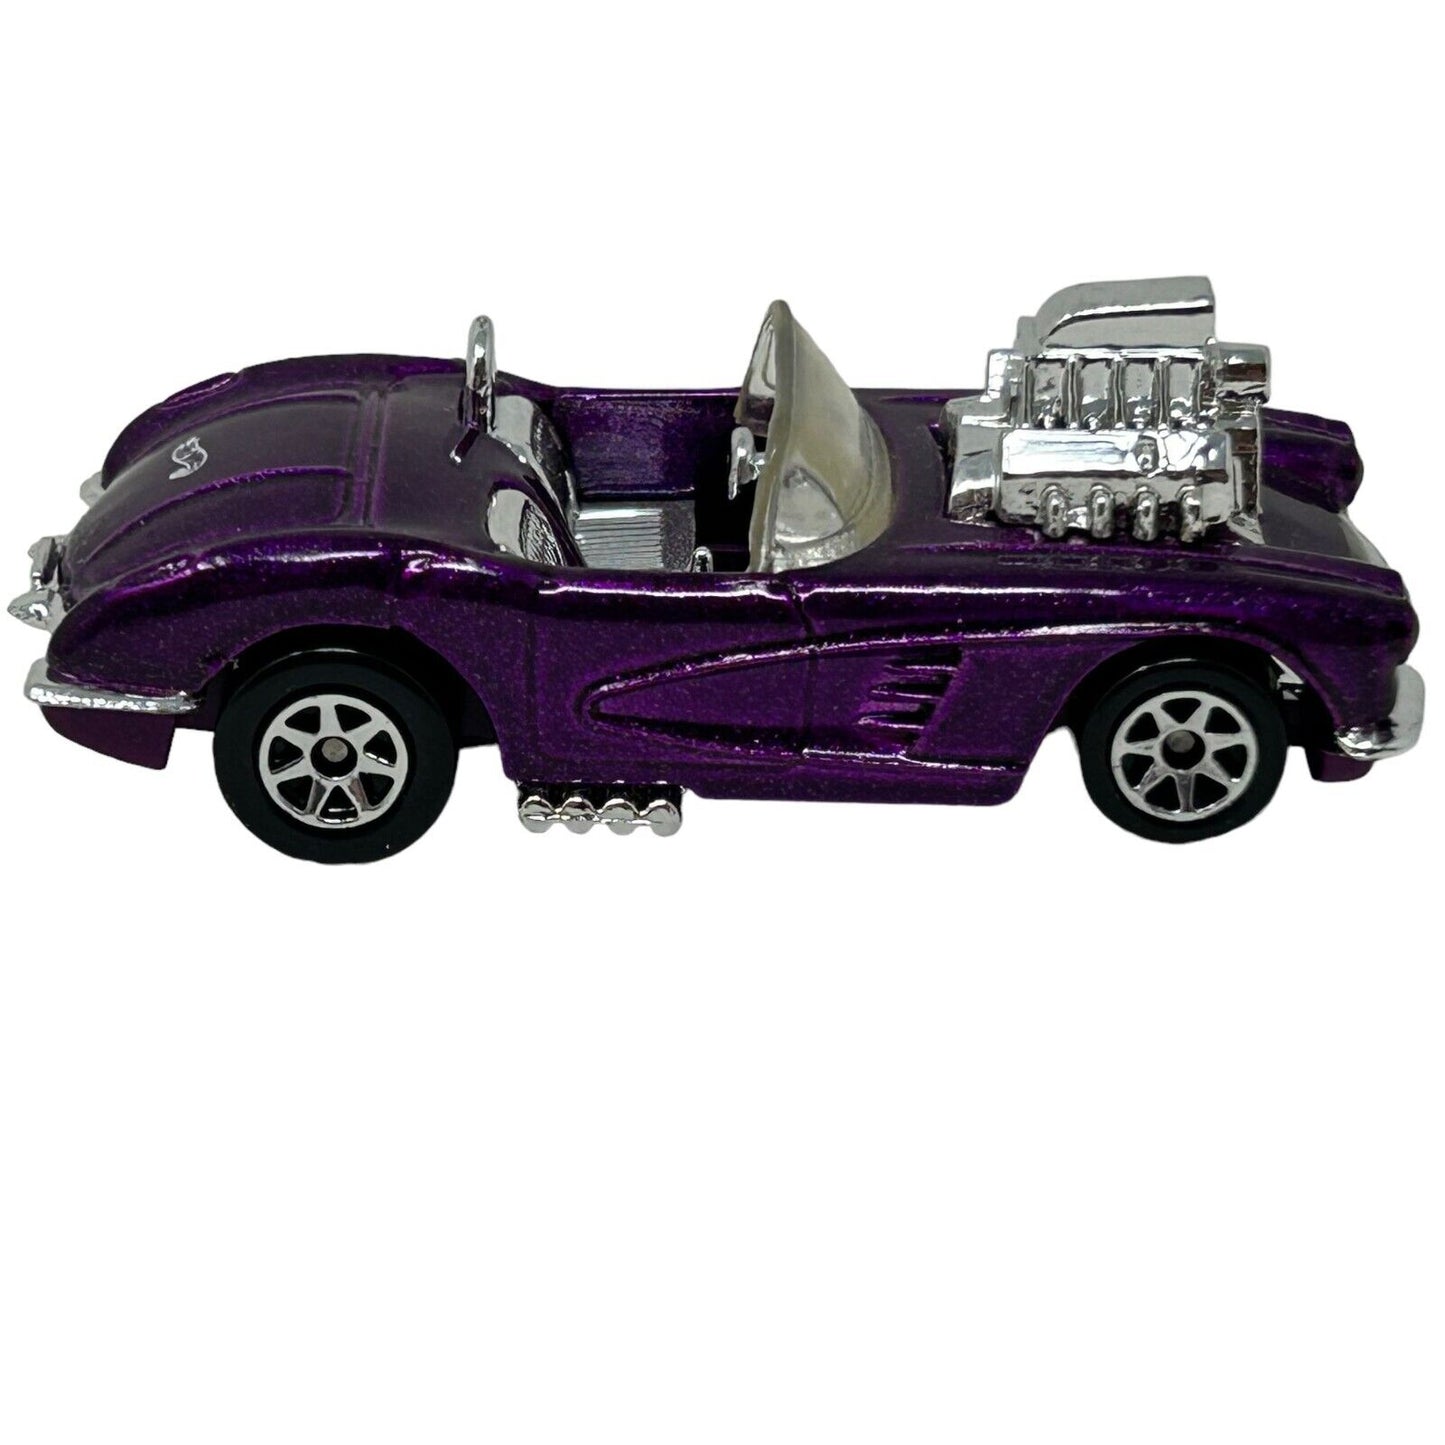 1958 C1 Chevrolet Corvette Hot Wheels Diecast Car Purple Toy Vehicle Vintage 90s